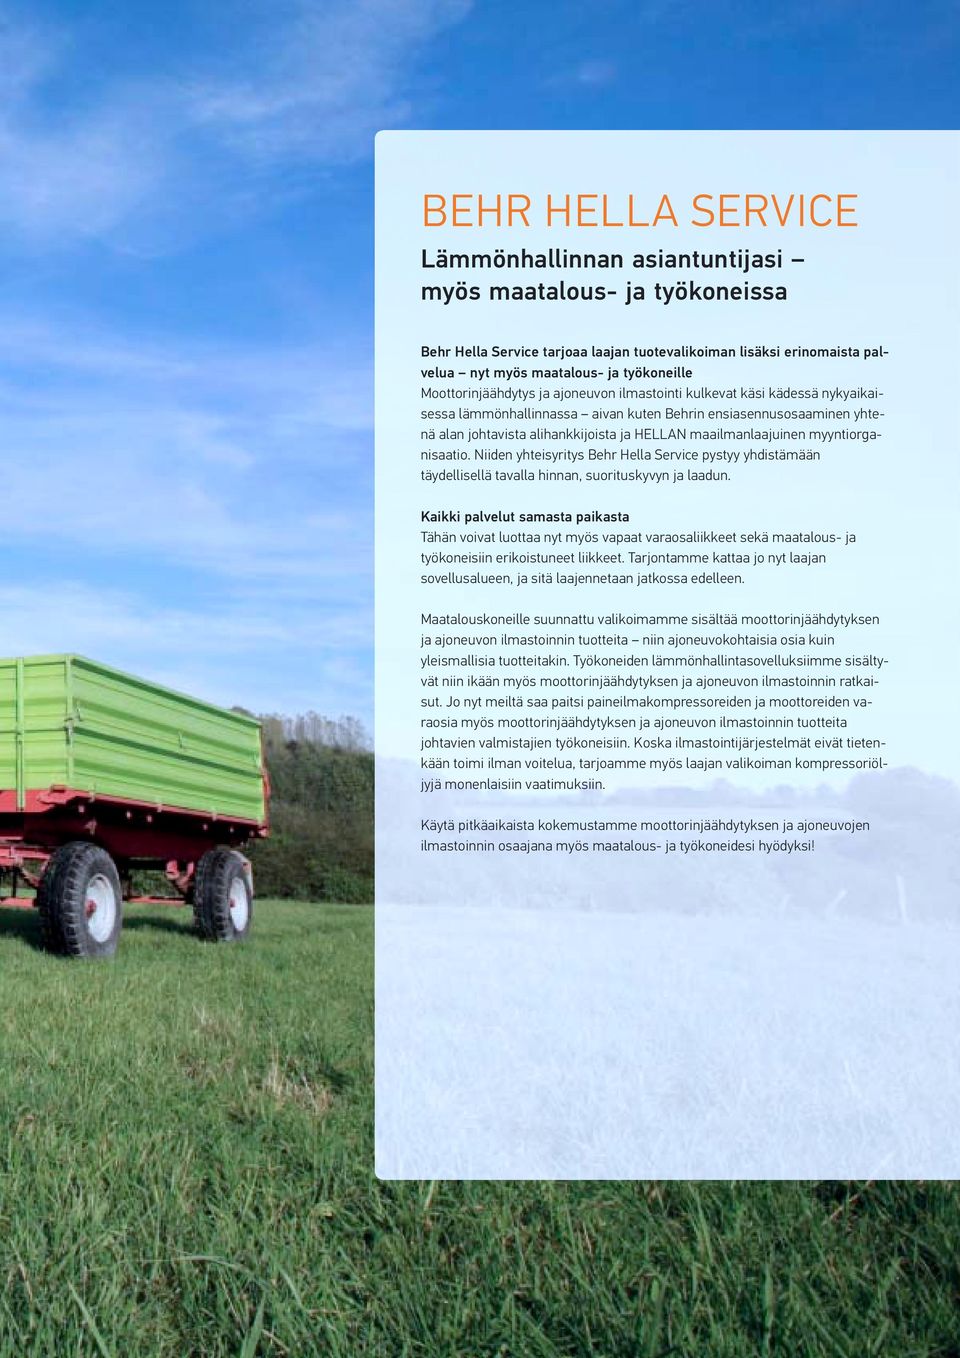 maailmanlaajuinen myyntiorganisaatio. Niiden yhteisyritys Behr Hella Service pystyy yhdistämään täydellisellä tavalla hinnan, suorituskyvyn ja laadun.